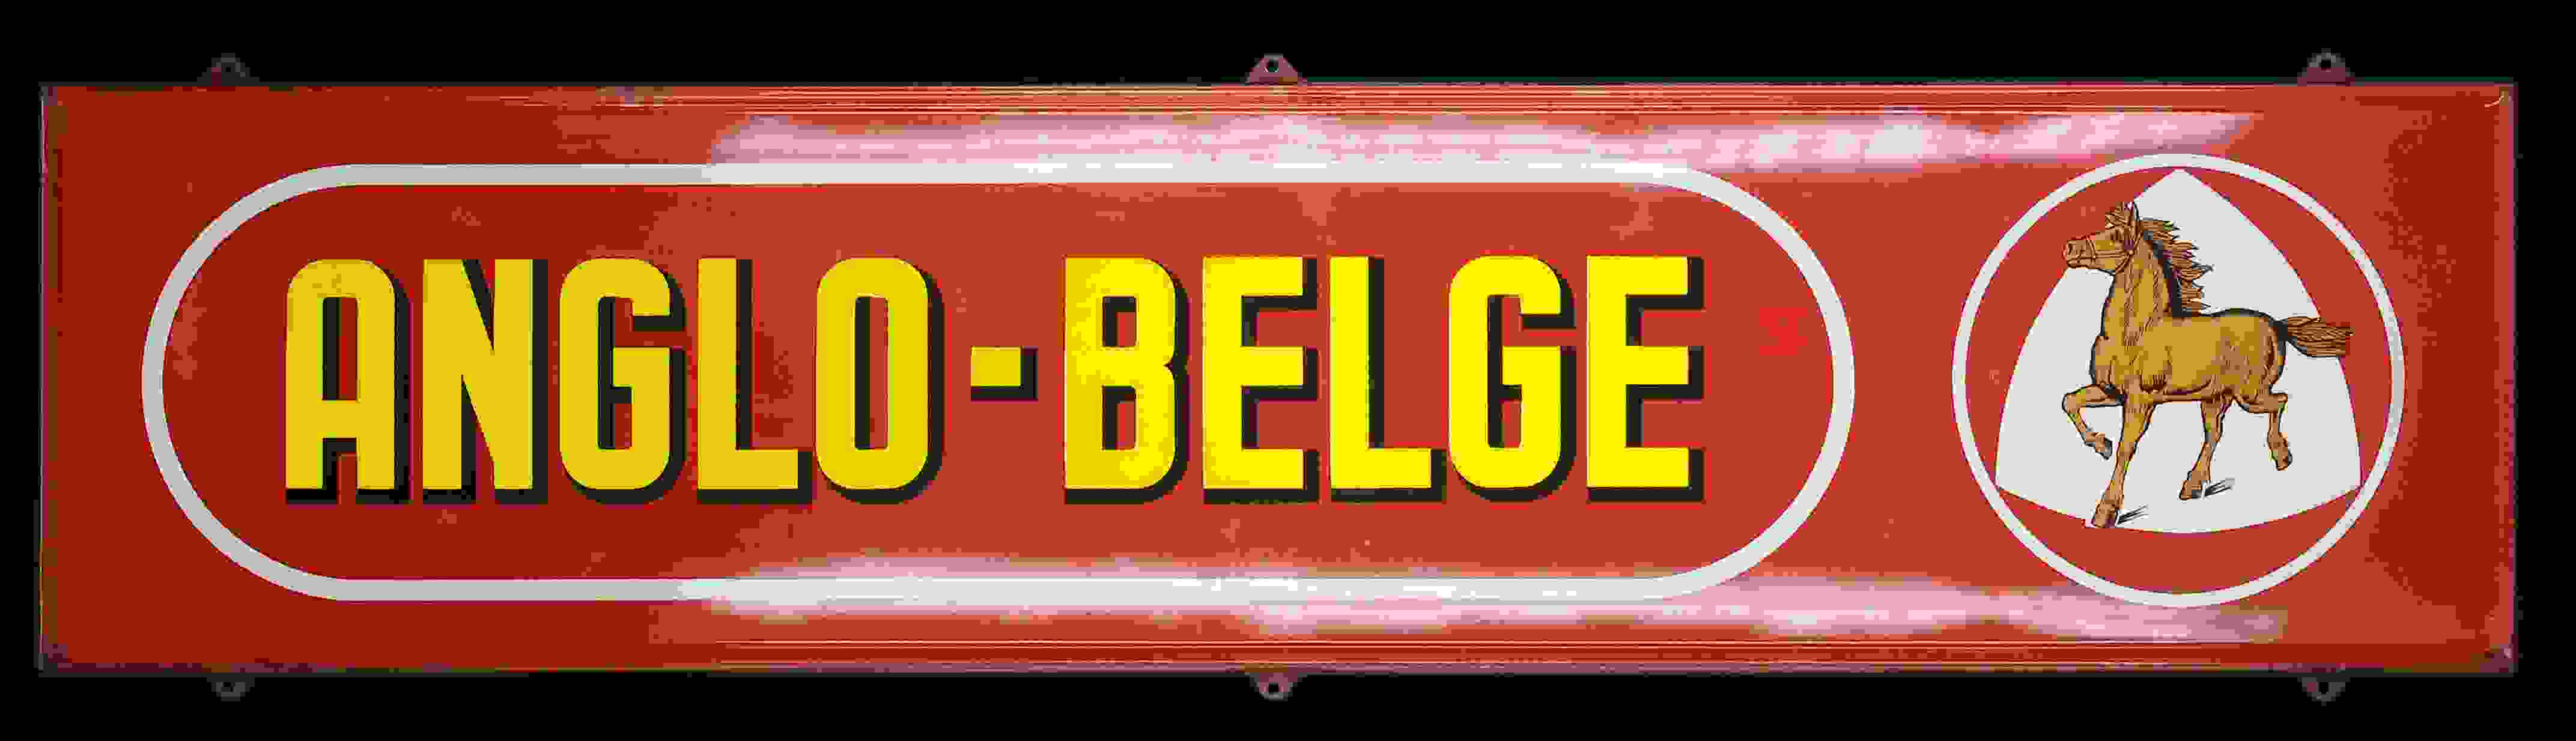 Anglo Belge 